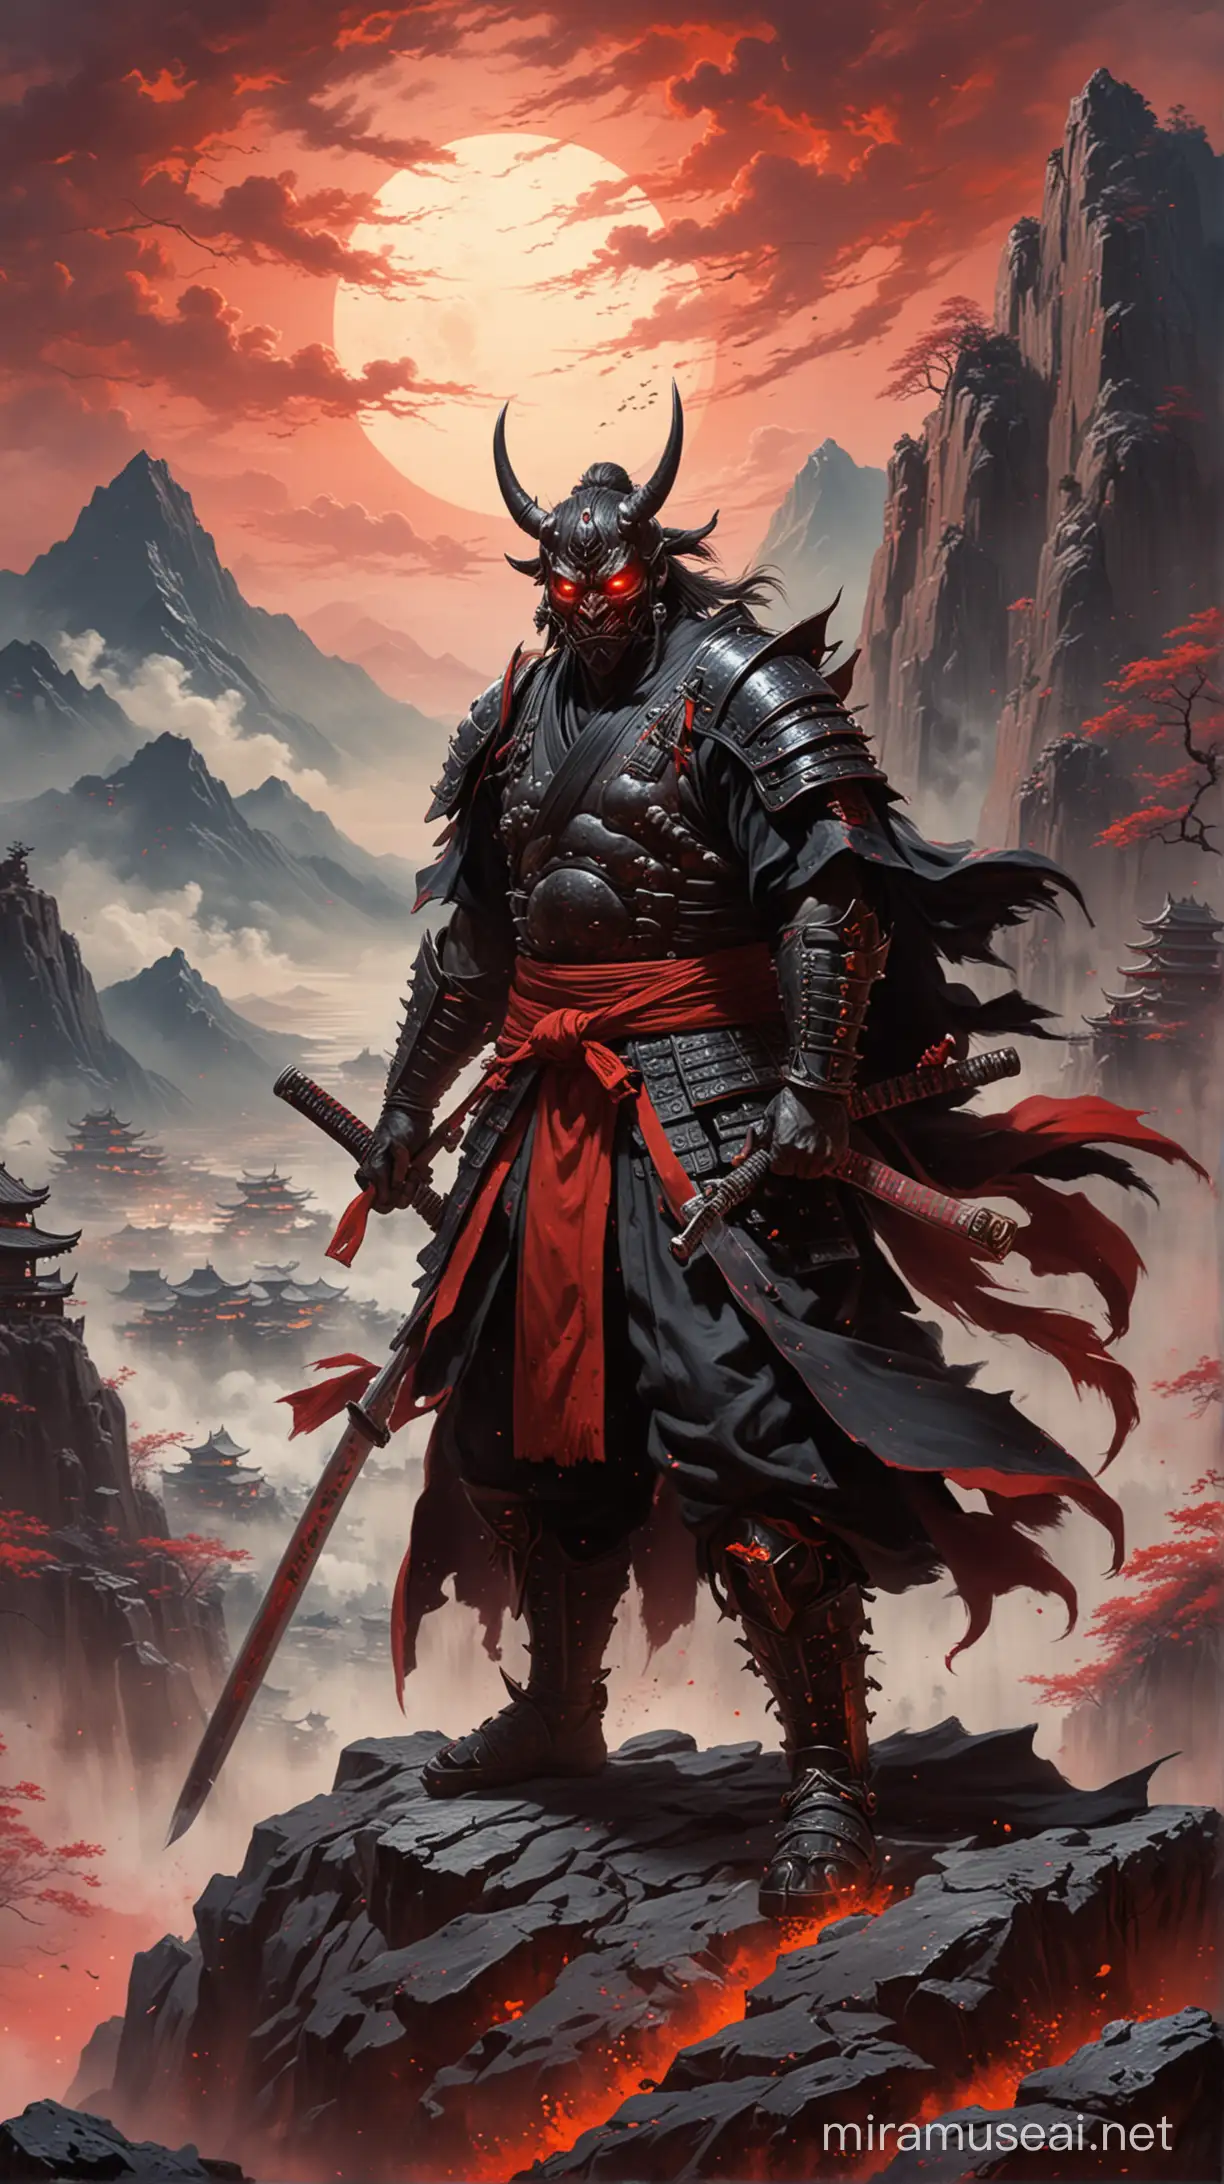 Fearsome Oni Samurai Warrior atop Mountain in RedBlack Armor